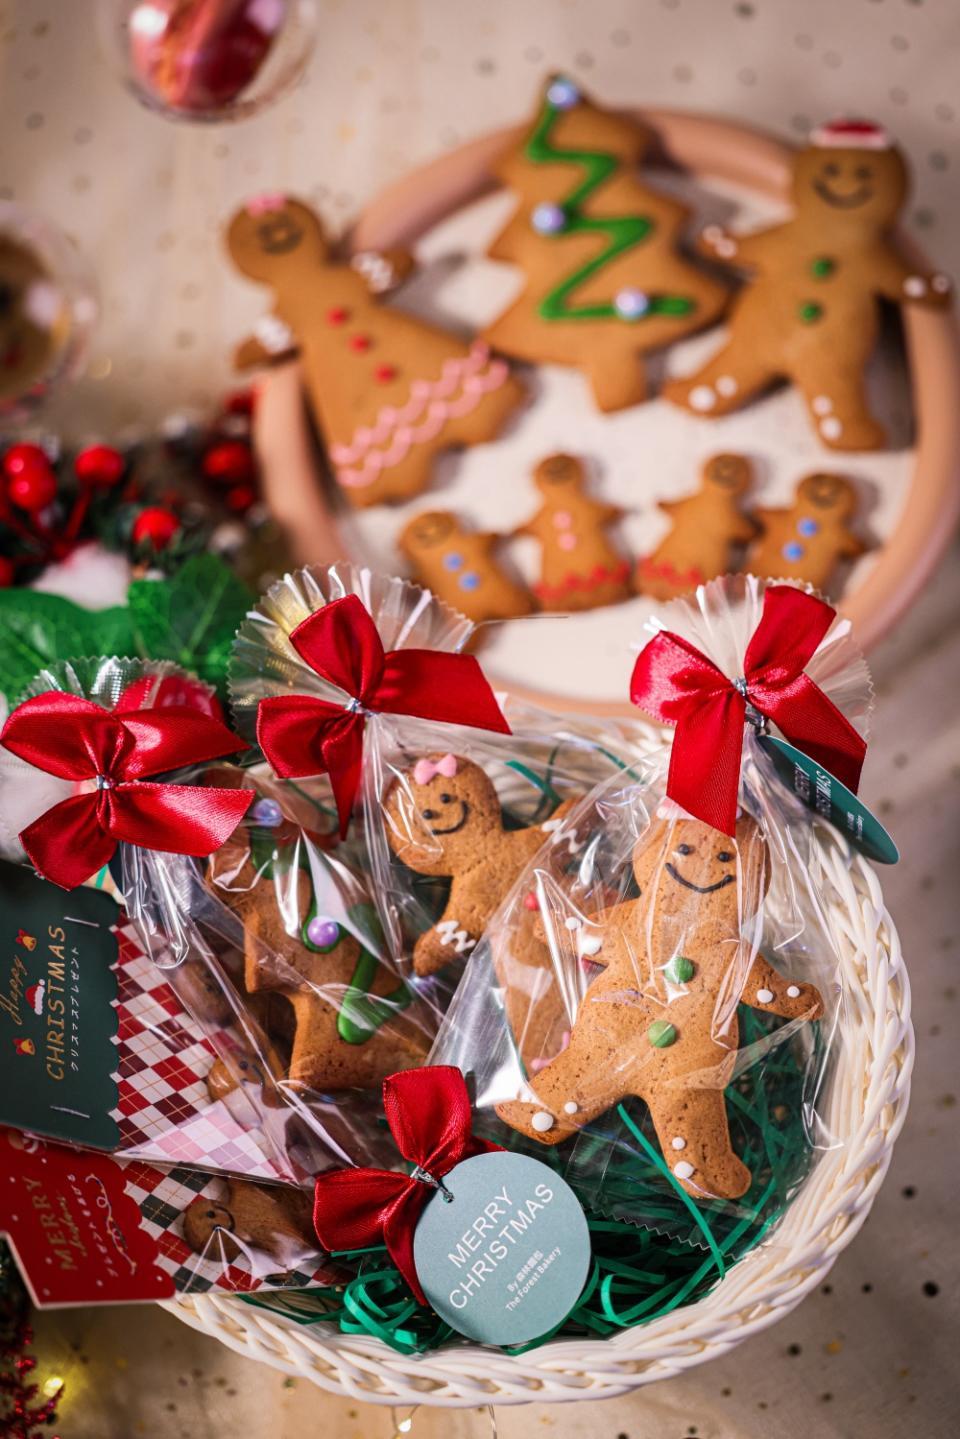 牛頭角人氣麵包店「森林麵包」 推出聖誕主題系列 必買香印提子乳酪聖誕蛋糕/傳統意大利聖誕麵包